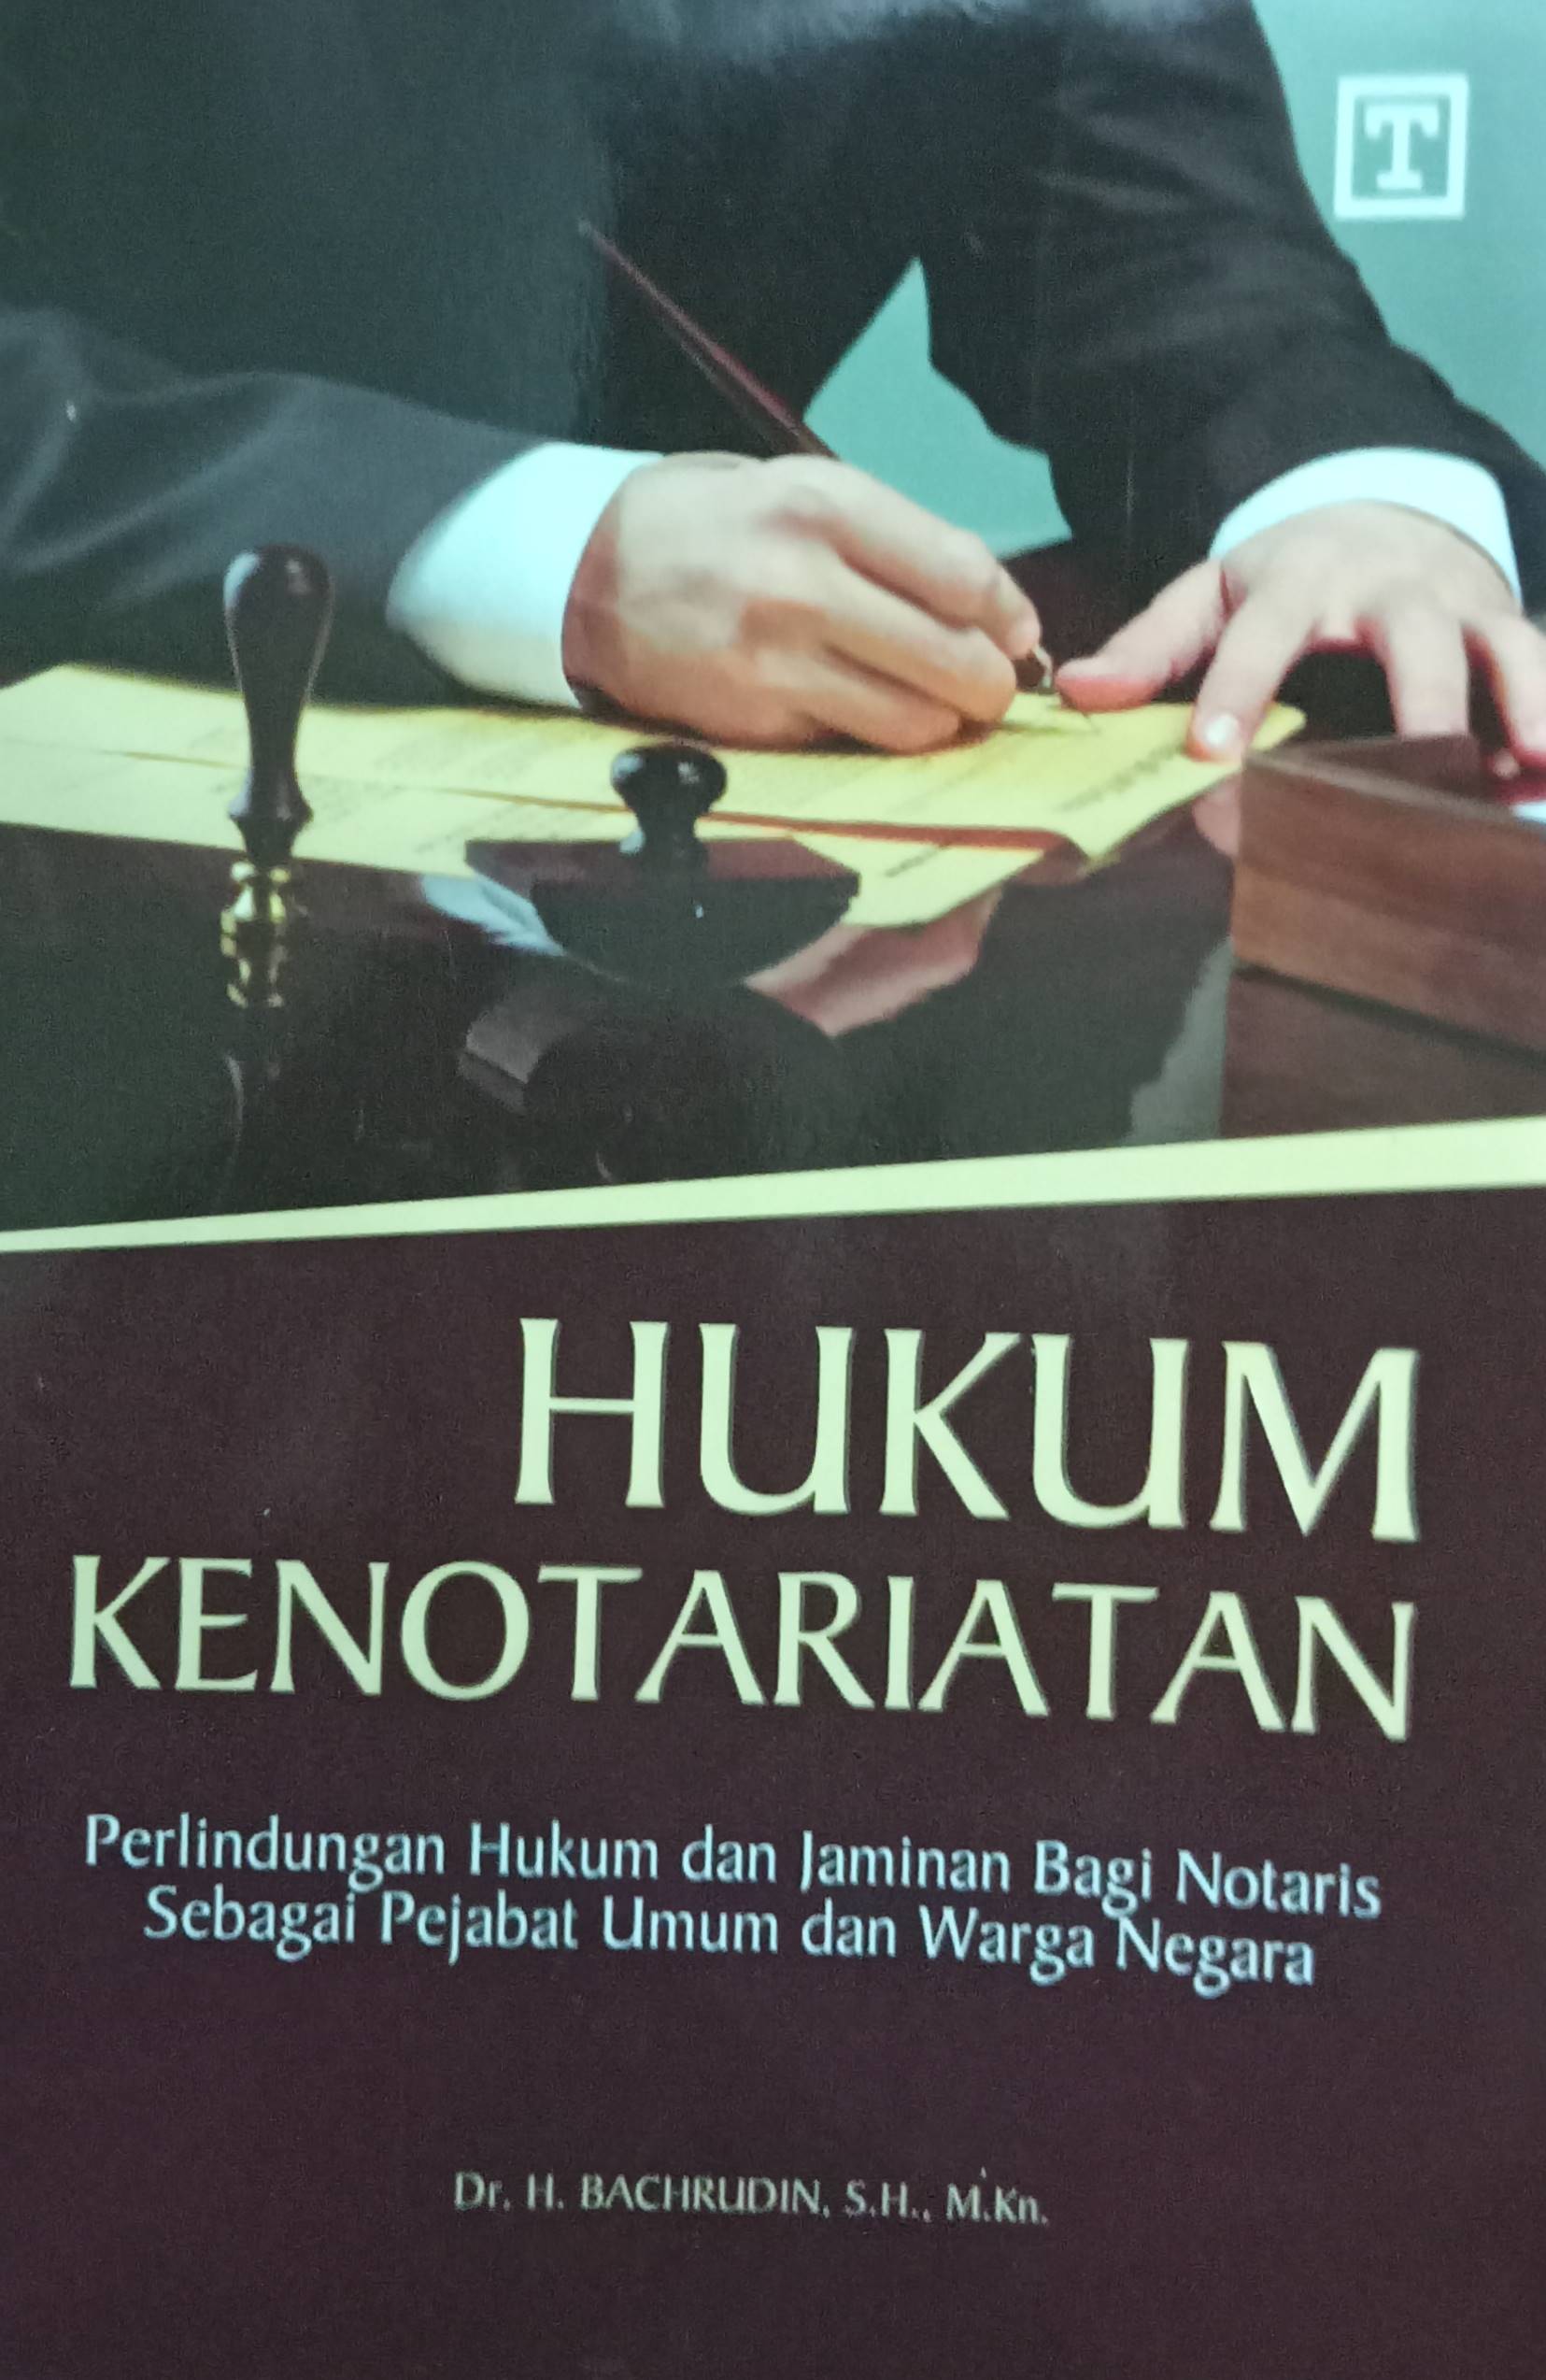 Hukum Kenotariatan: Perlindungan Hukum dan Jaminan Bagi Notaris Sebagai Pejabat Umum dan Warga Negara